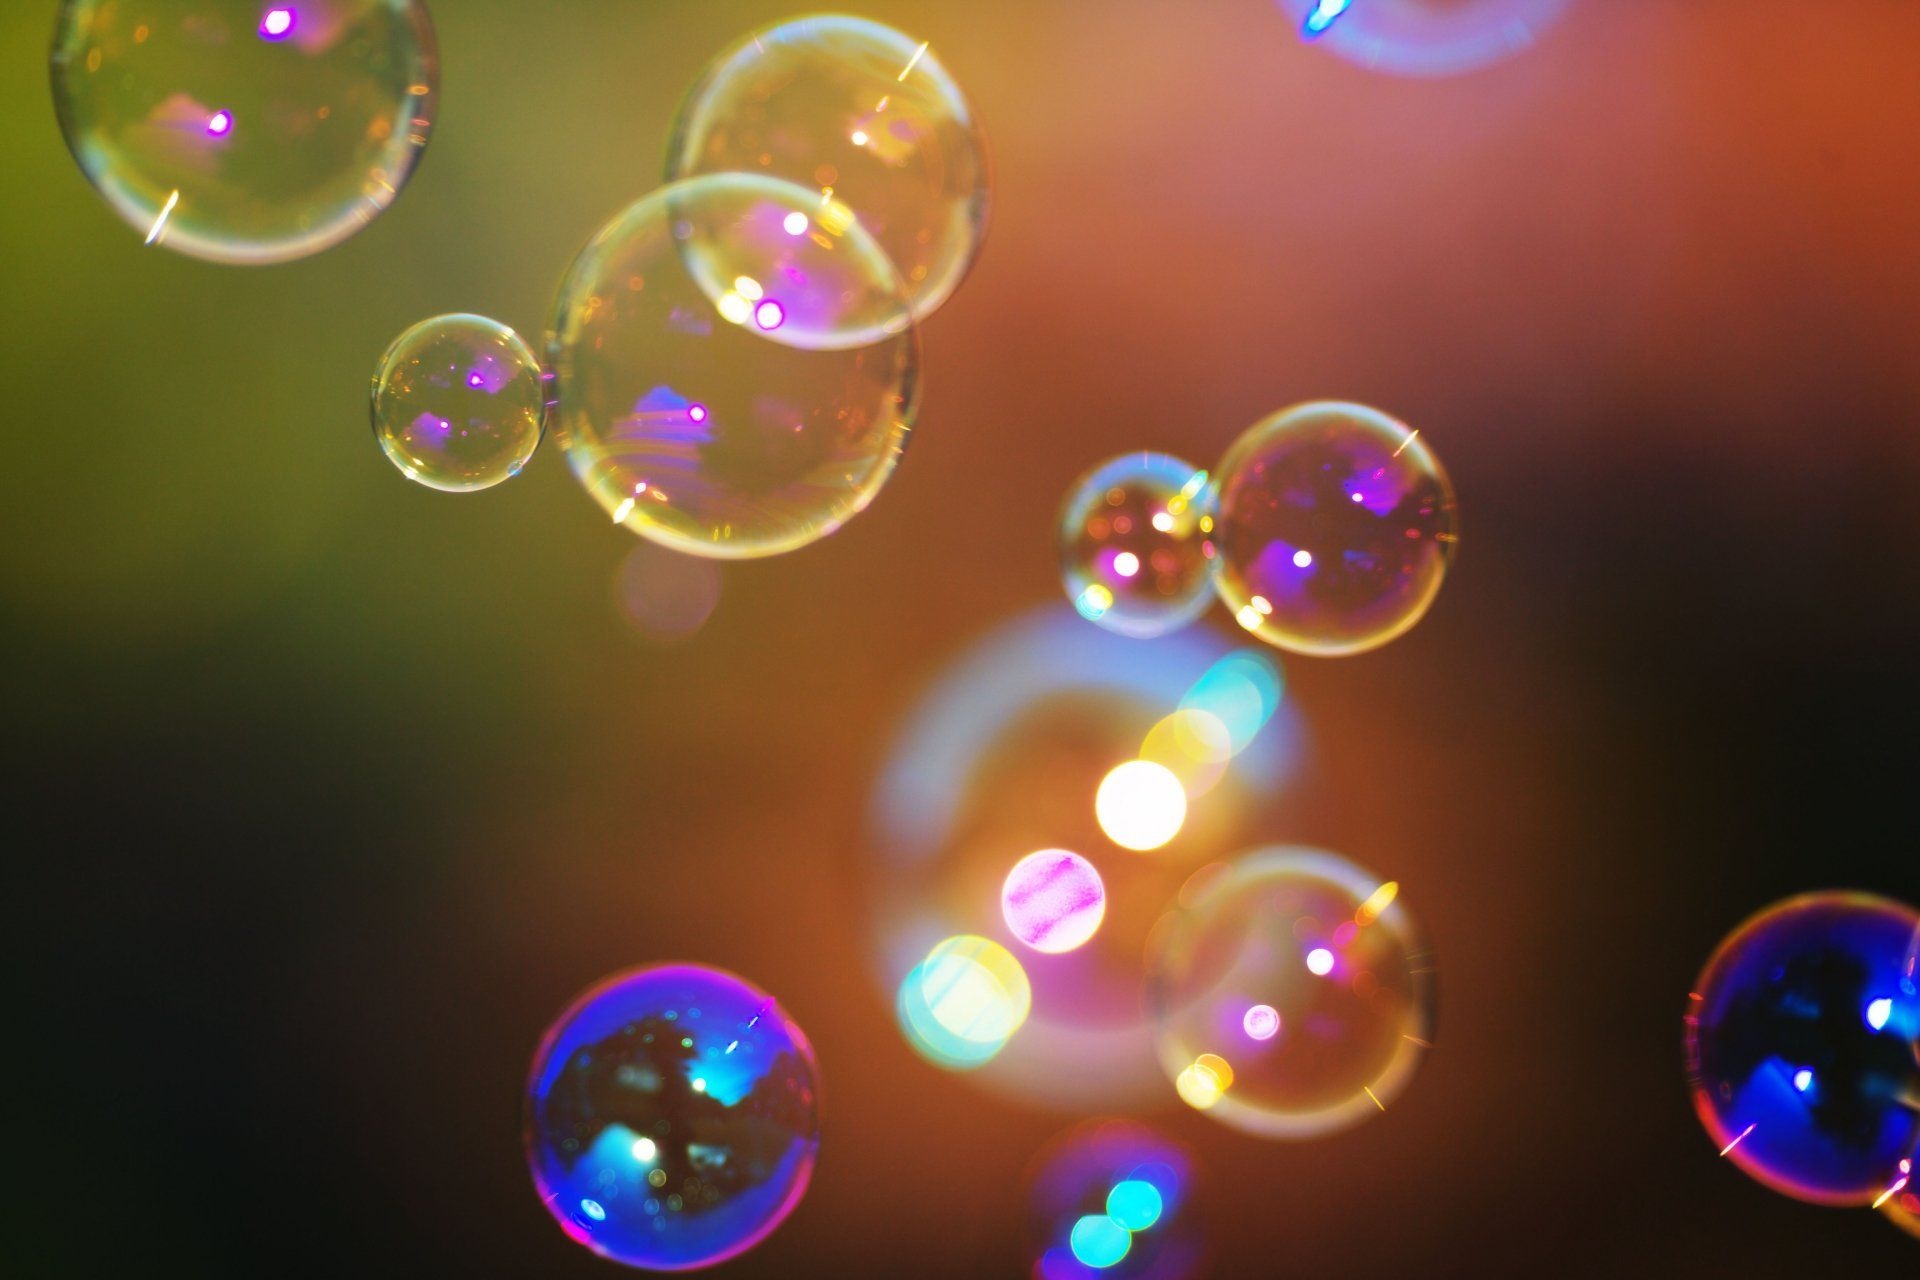 4K bubble wallpapers, Colorful bubble backgrounds, Bubble art, Abstract bubbles, Bubble burst, 1920x1280 HD Desktop